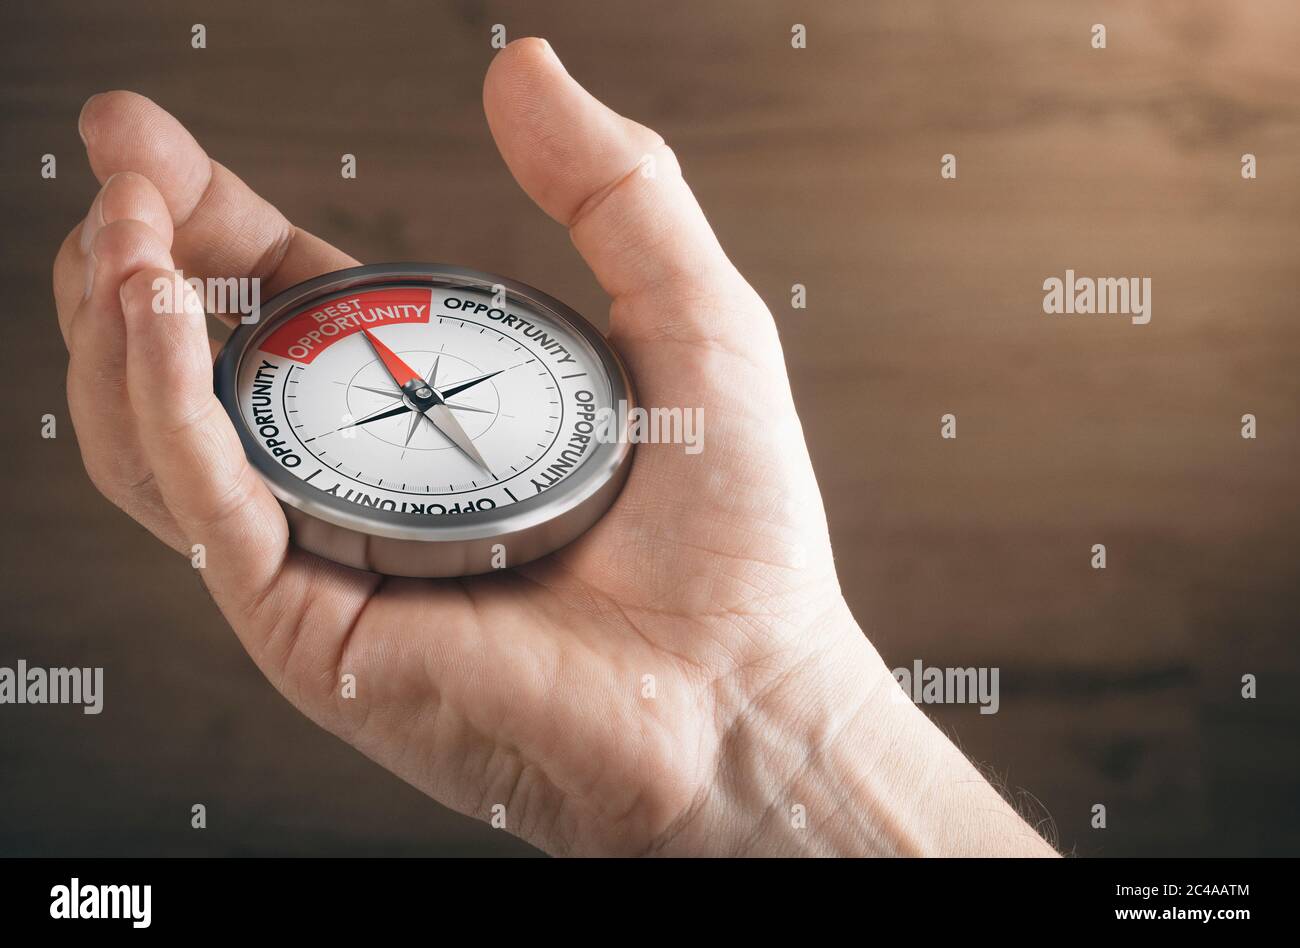 Mann Hand zeigt Kompass mit Nadel zeigt den Text beste Gelegenheit. Konzeptbild zur Darstellung von Geschäfts- oder Karrieremöglichkeiten. Stockfoto